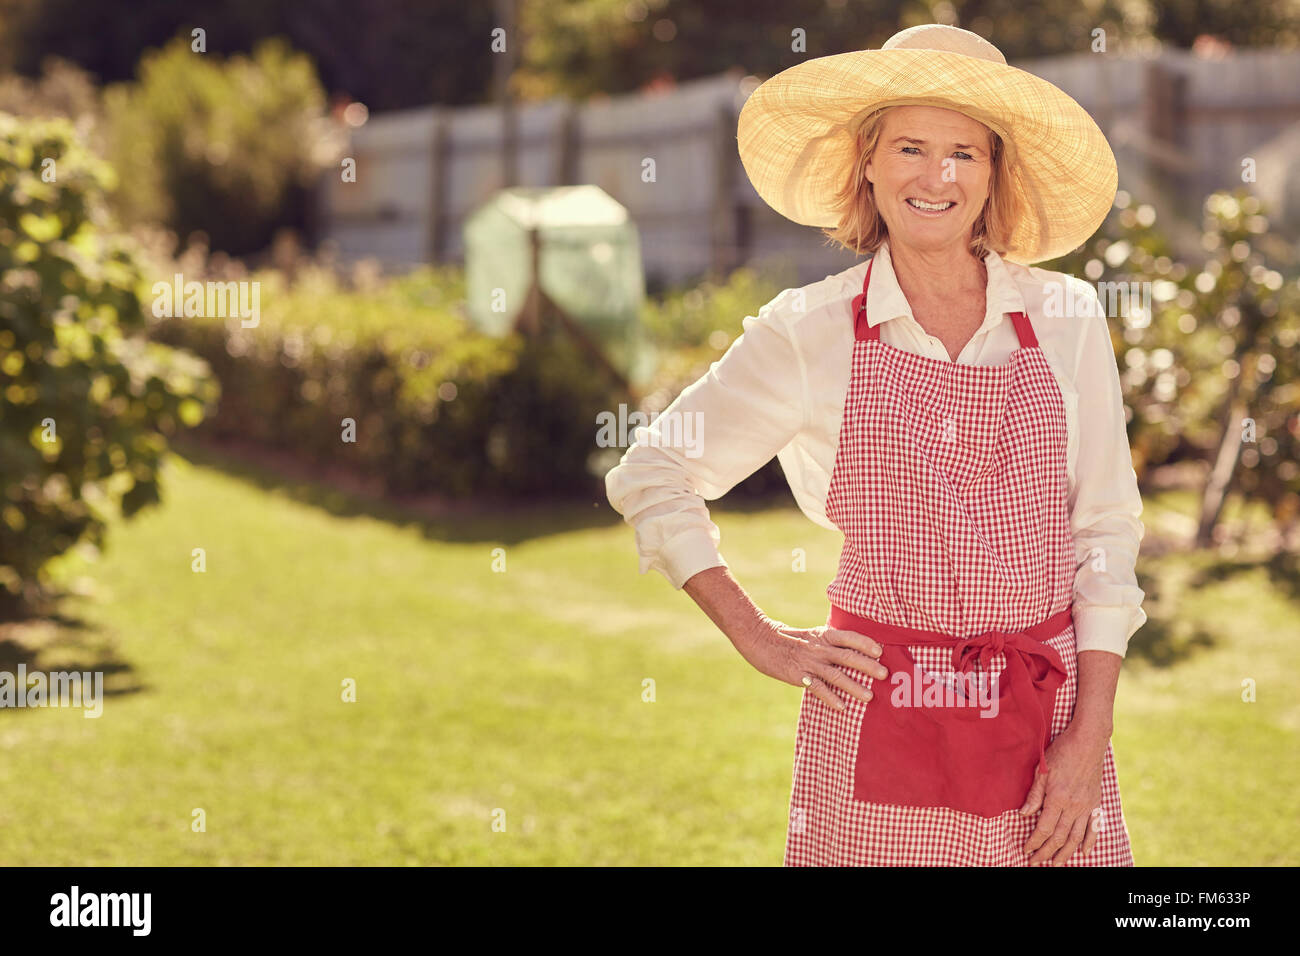 Smiling senior woman dans son jardin un jour d'été Banque D'Images